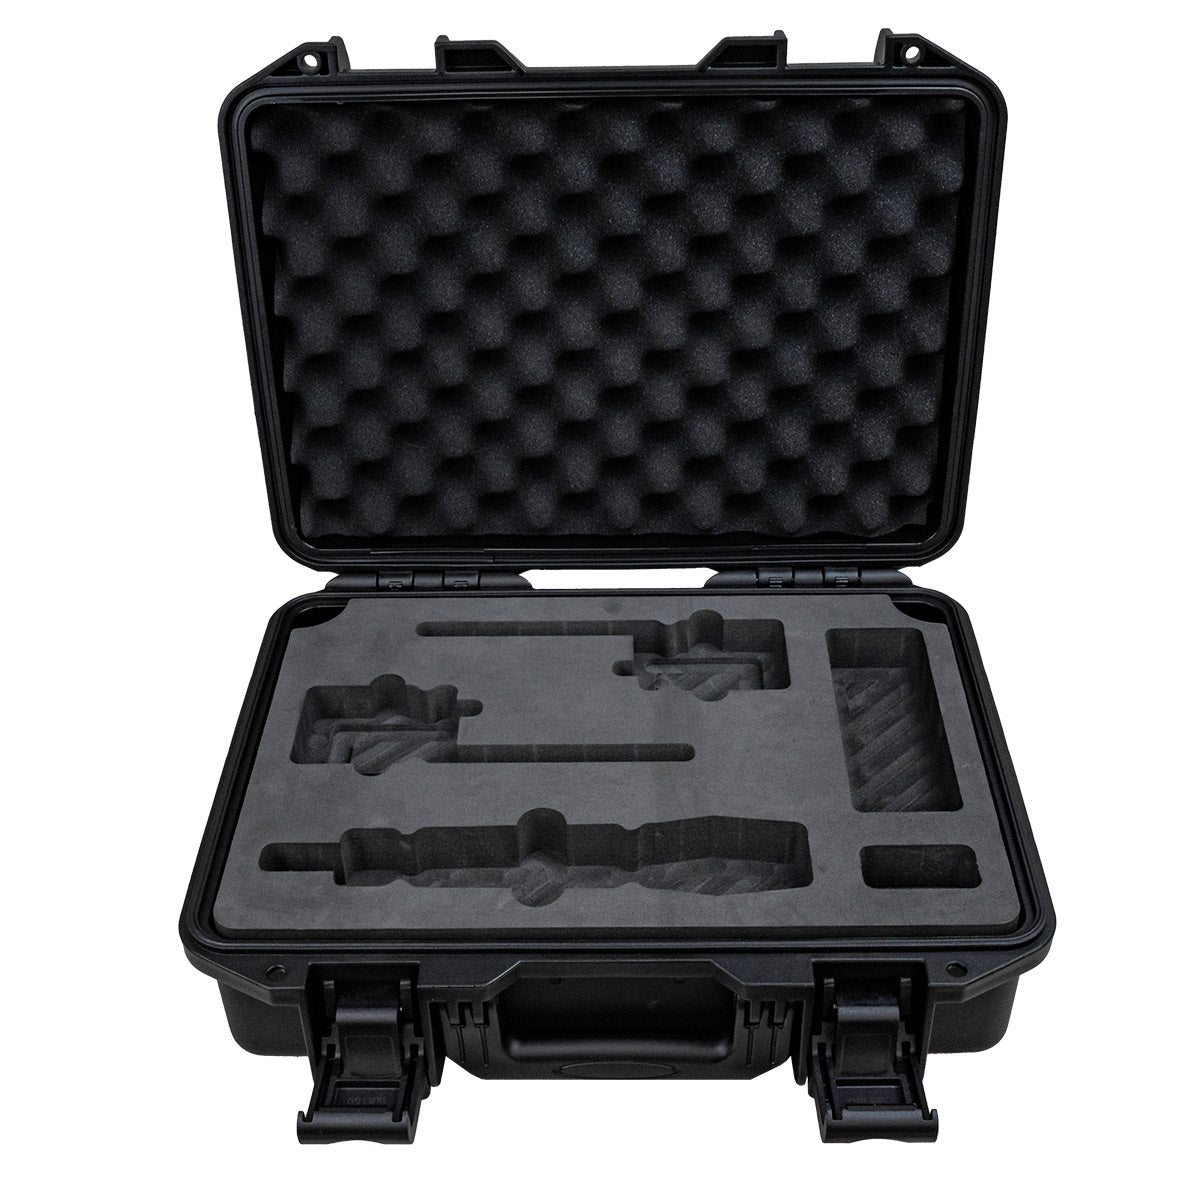 Sennheiser EW Series Mic & Belt Packs Waterproof Case by Titan AV